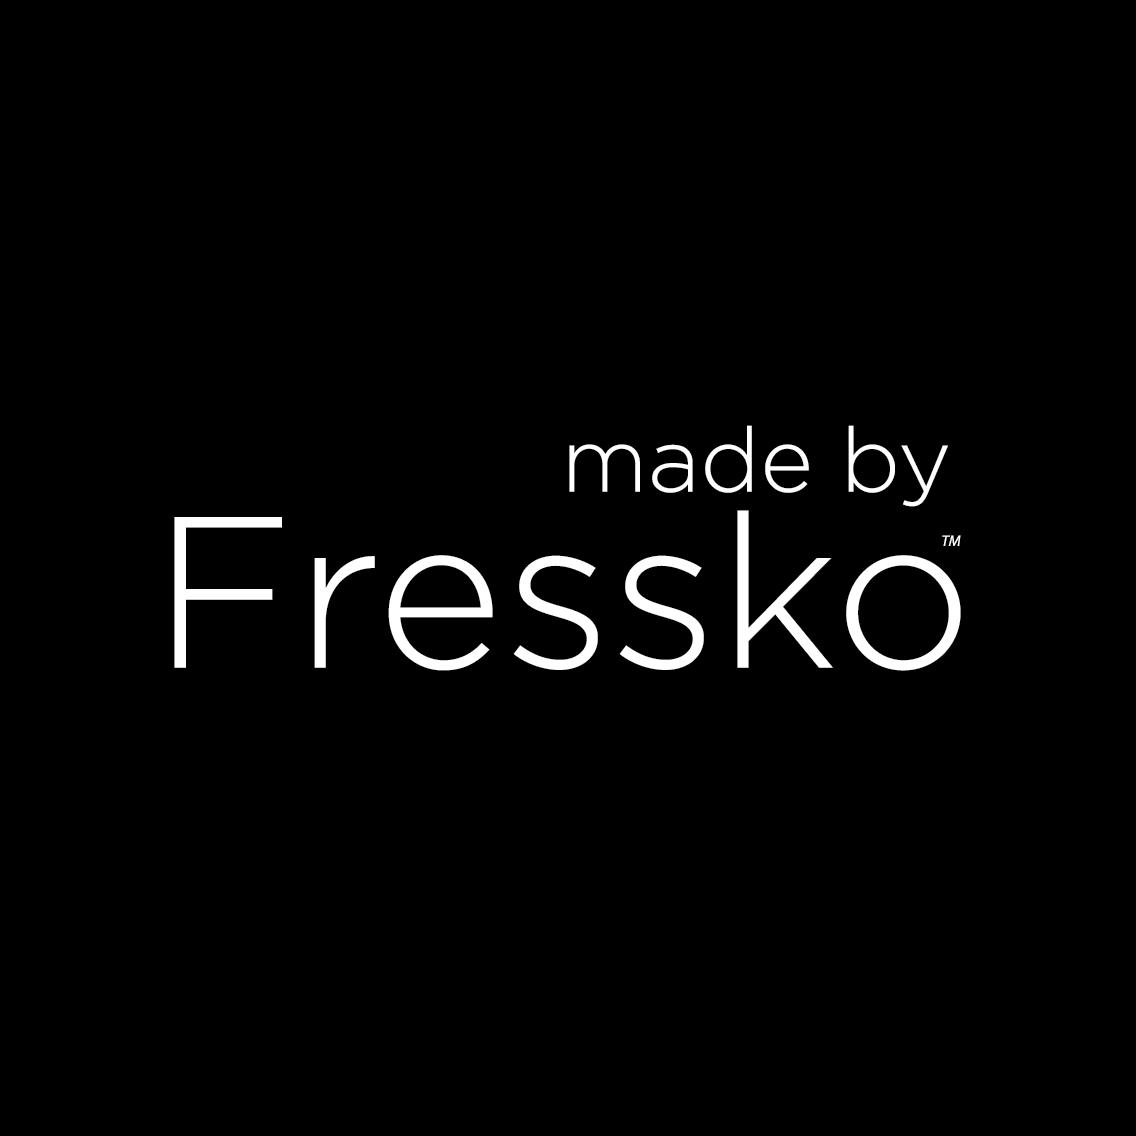 Made By Fressko